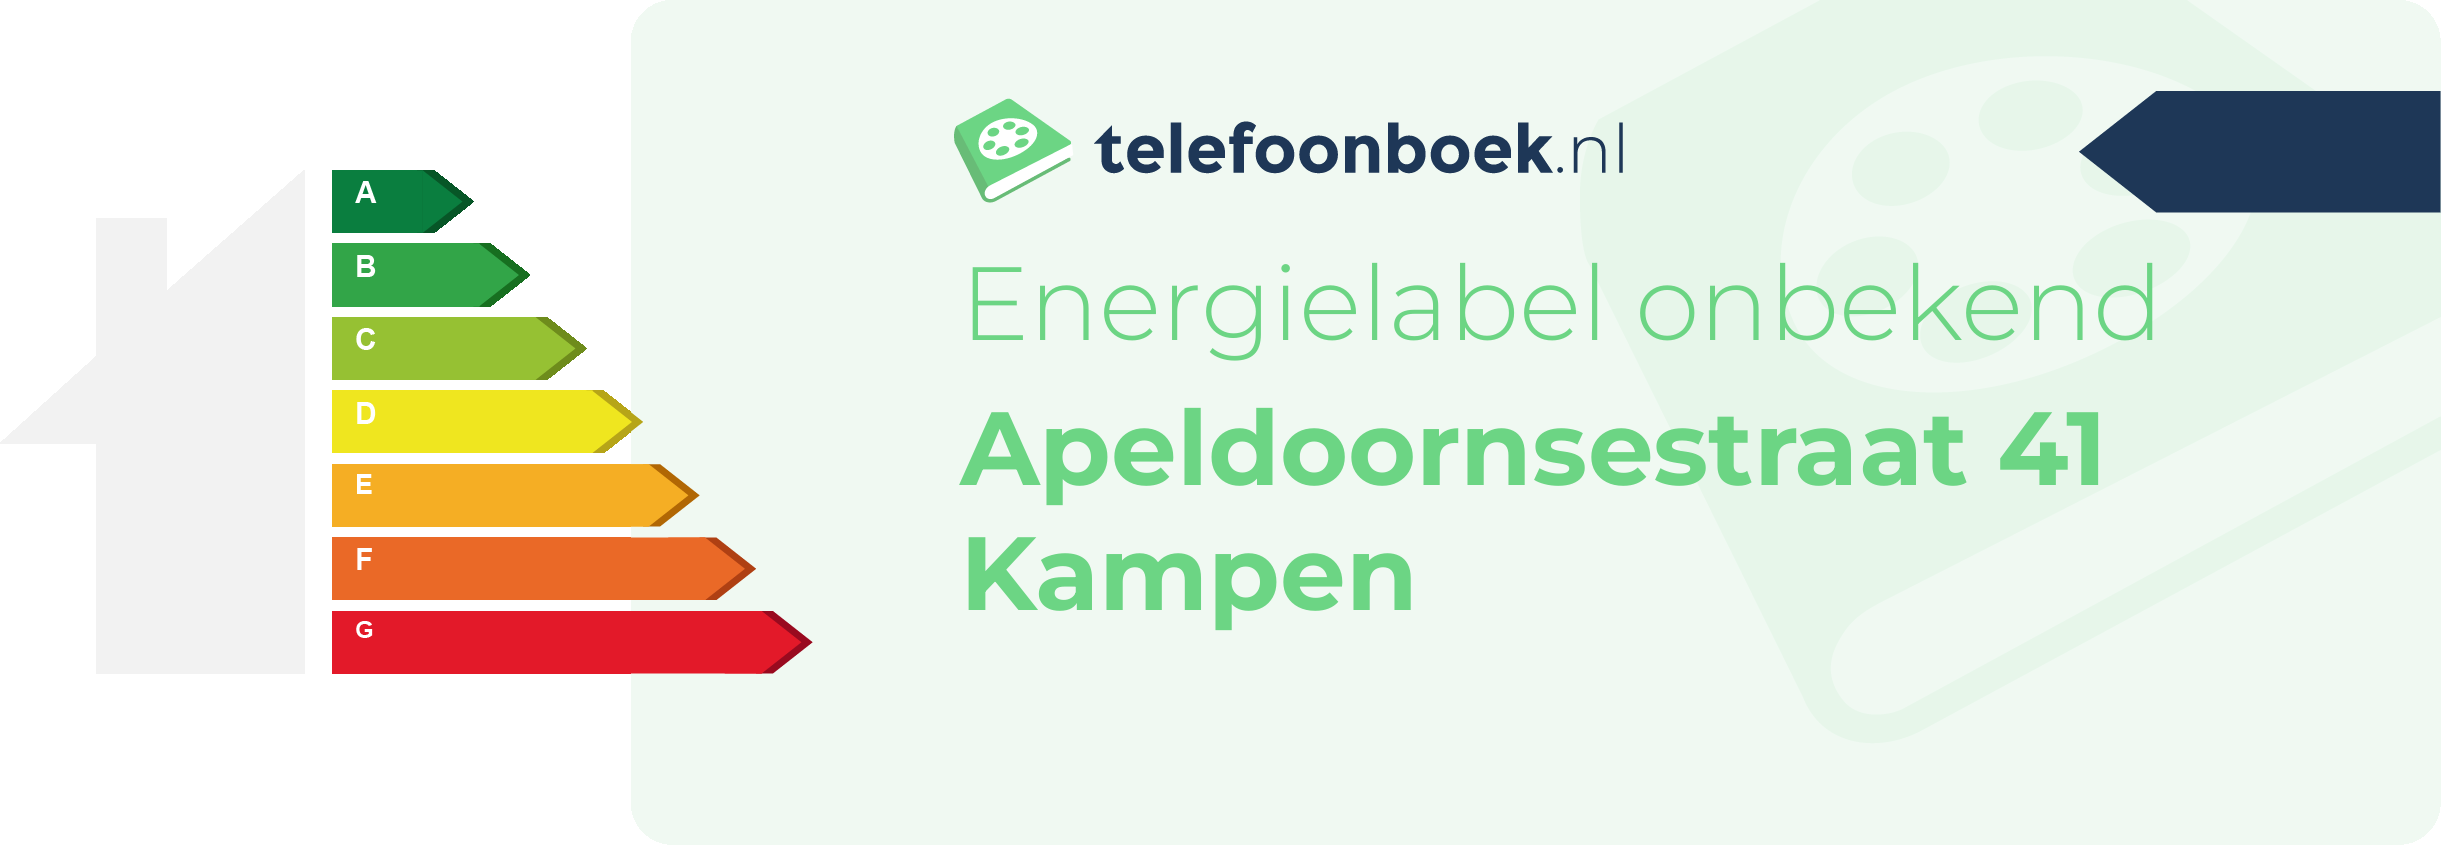 Energielabel Apeldoornsestraat 41 Kampen